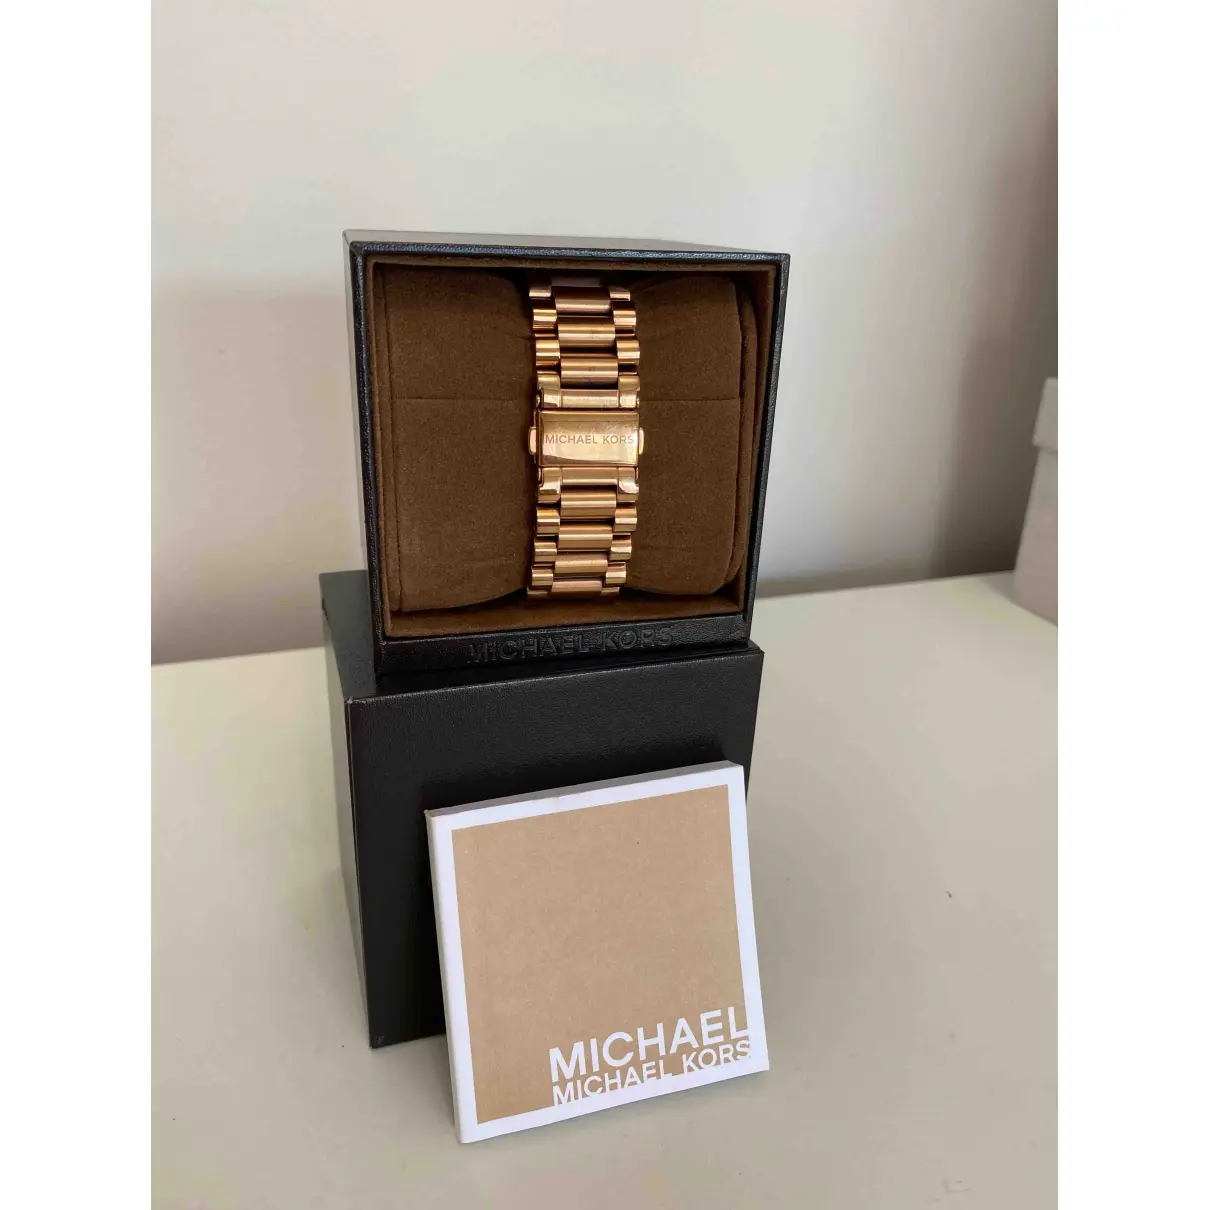 Buy Michael Kors Pink gold watch online